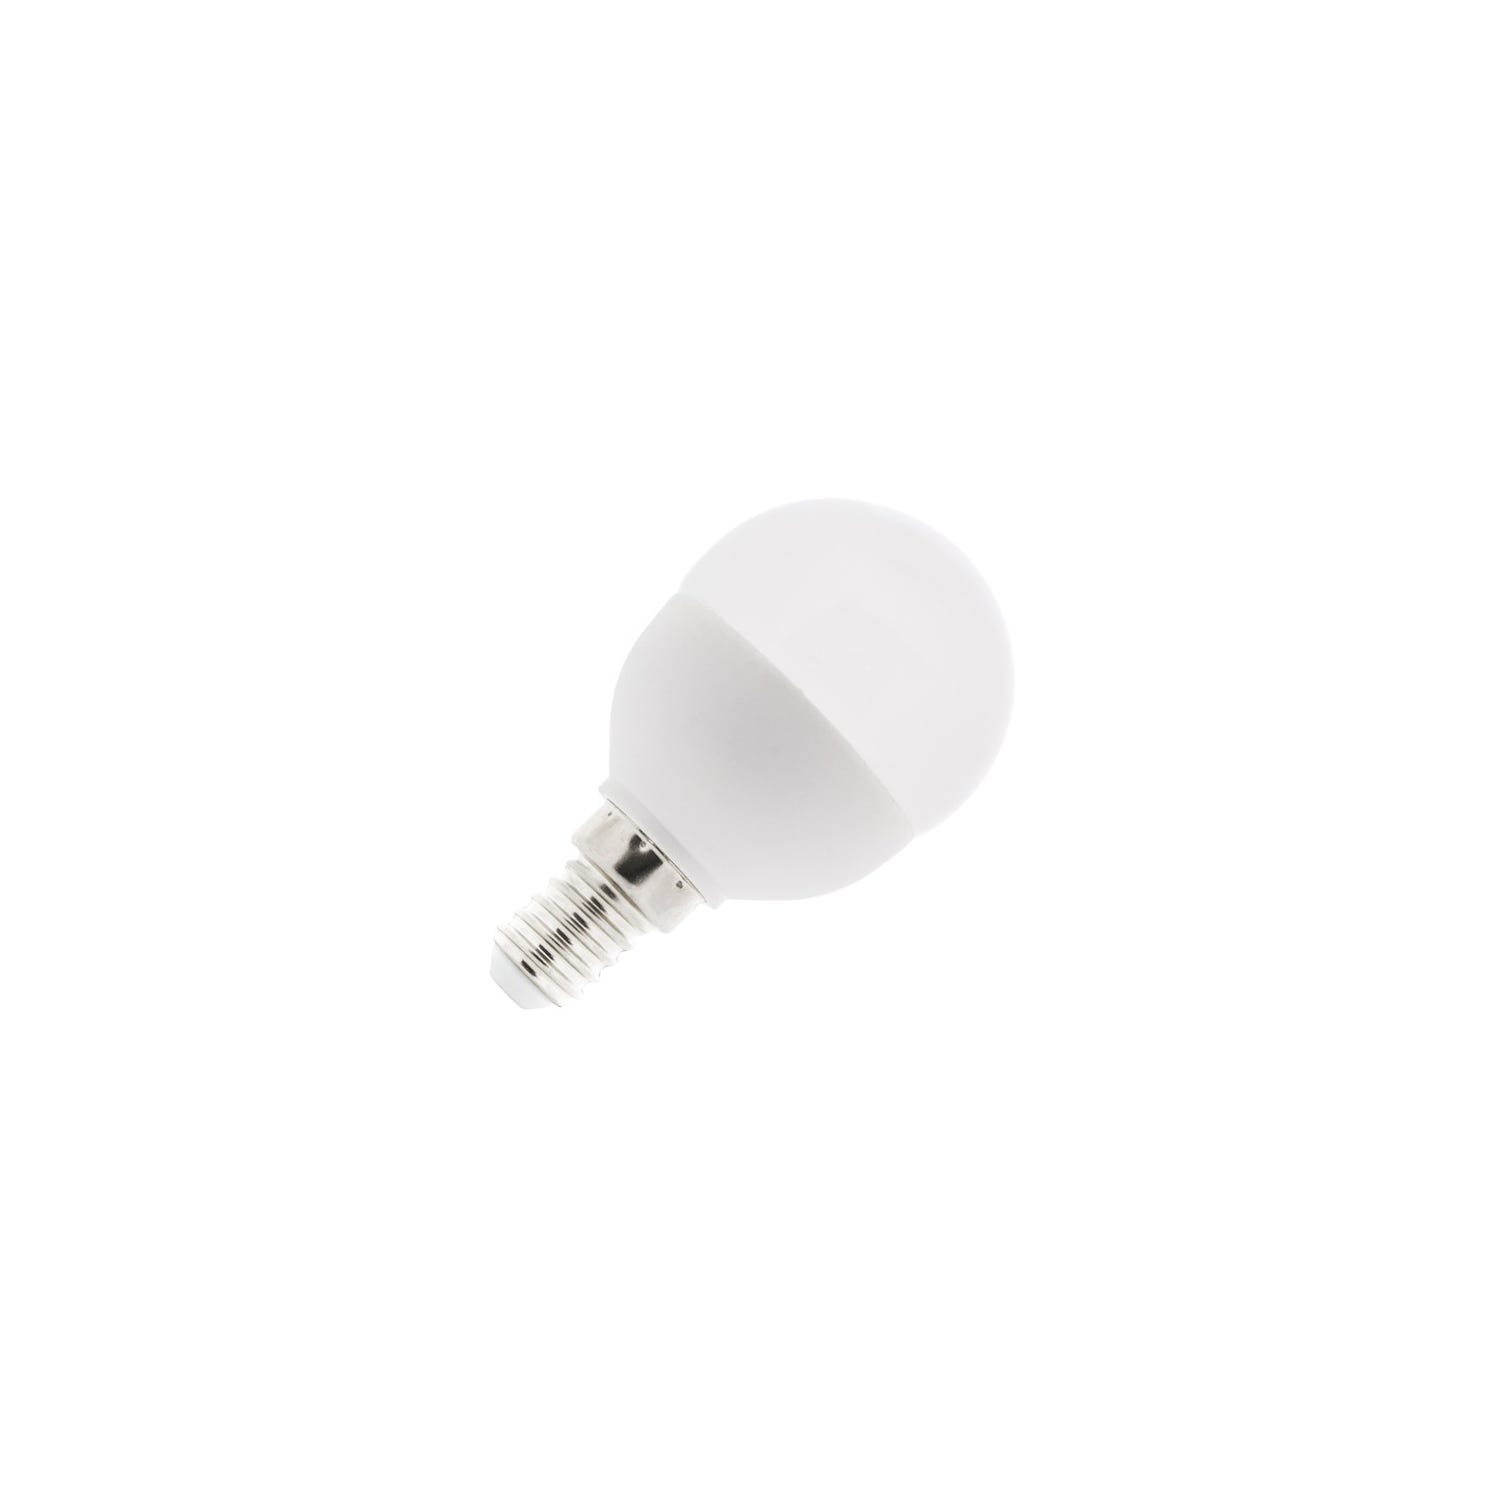 LUTW Ampoule LED E14 Blanc Froid 6500K, Ampoule Bougie LED C37, 5W  Équivalent 40W, 545LM, Ampoule